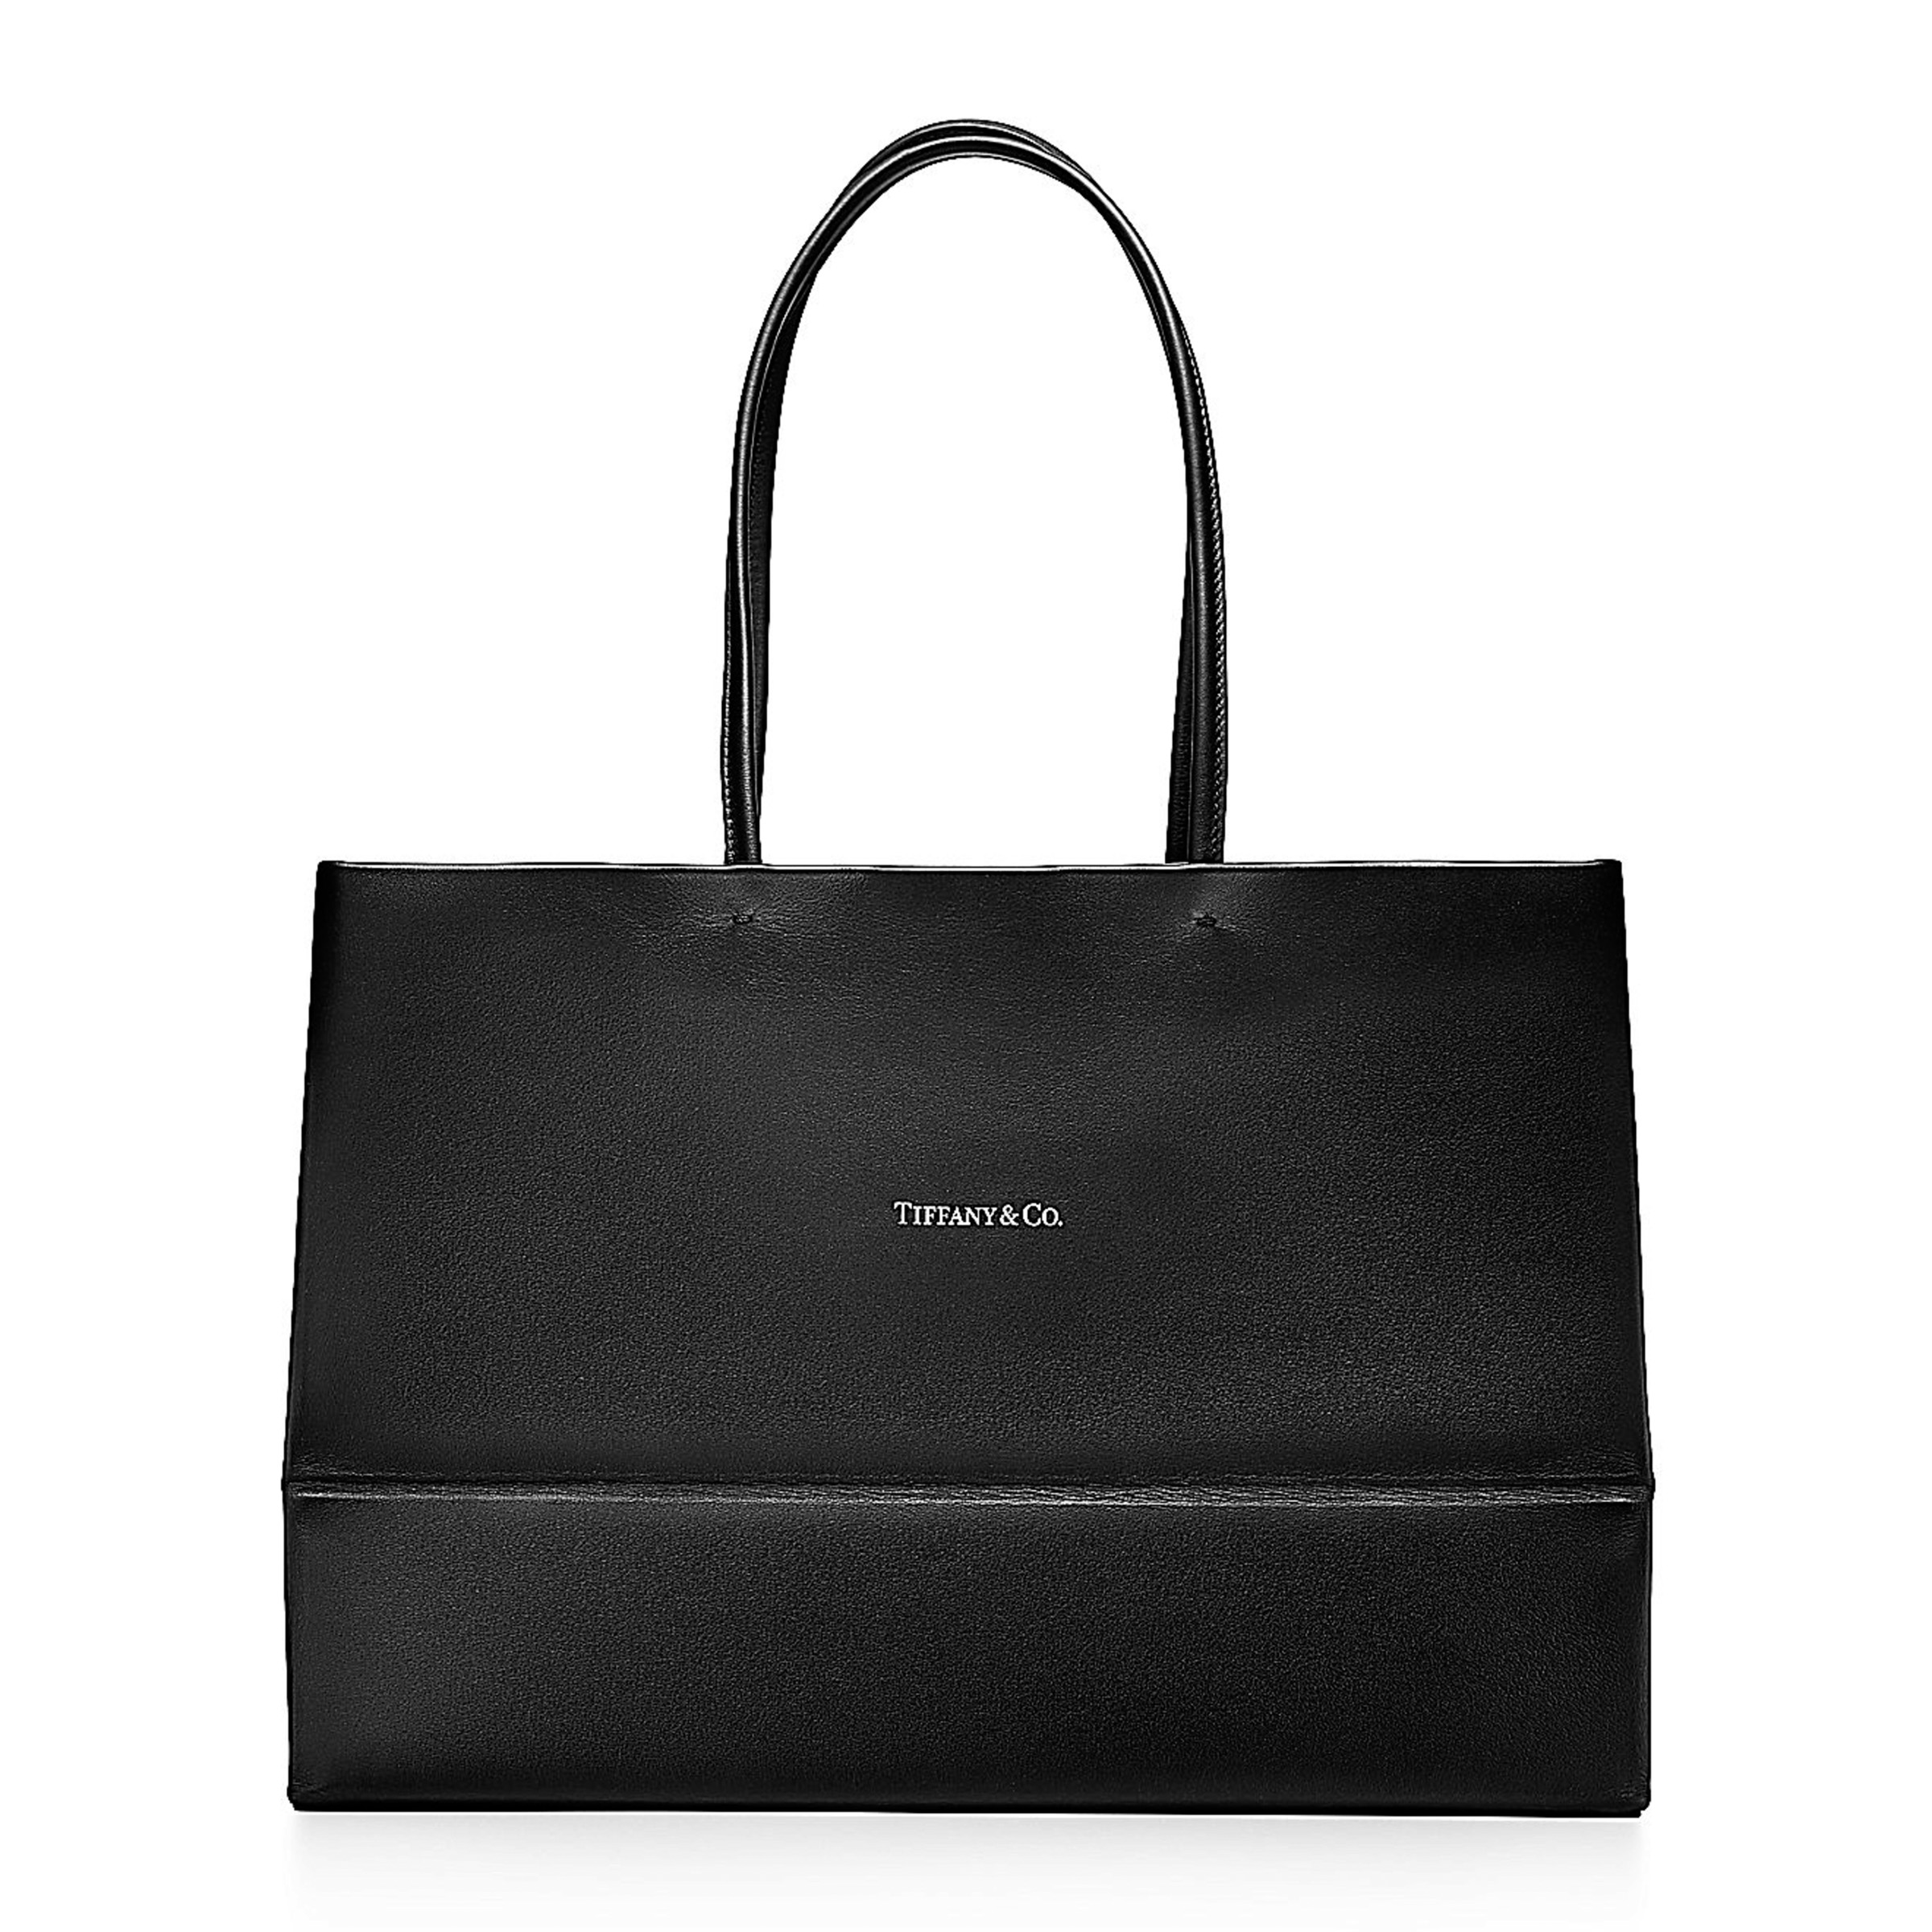 ティファニーがショッパーデザインのレザーバッグ発売、キャット